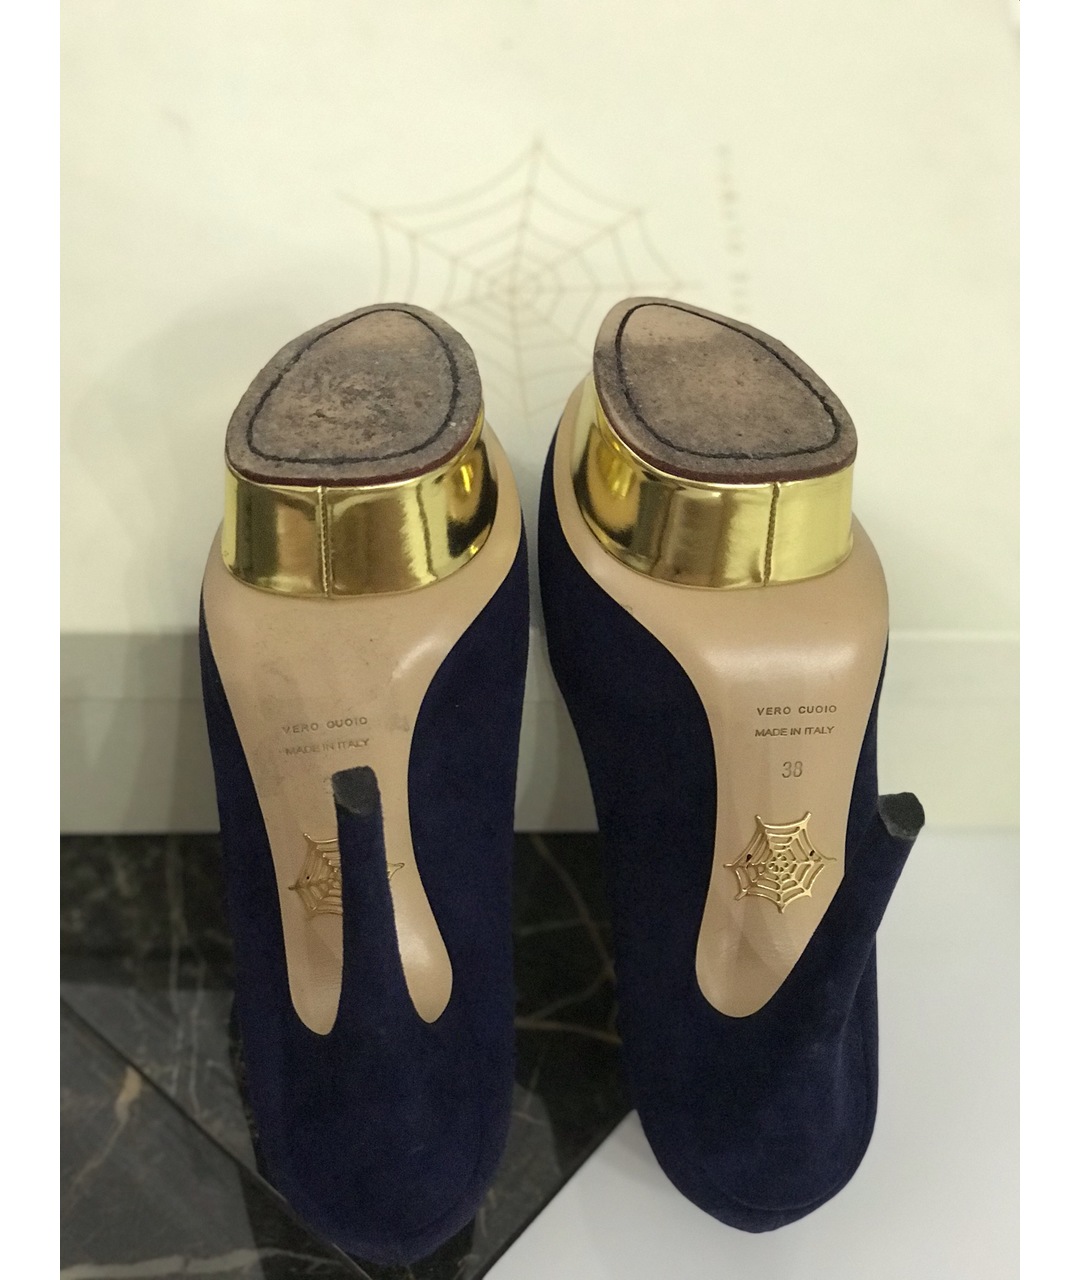 CHARLOTTE OLYMPIA Синие замшевые туфли, фото 3